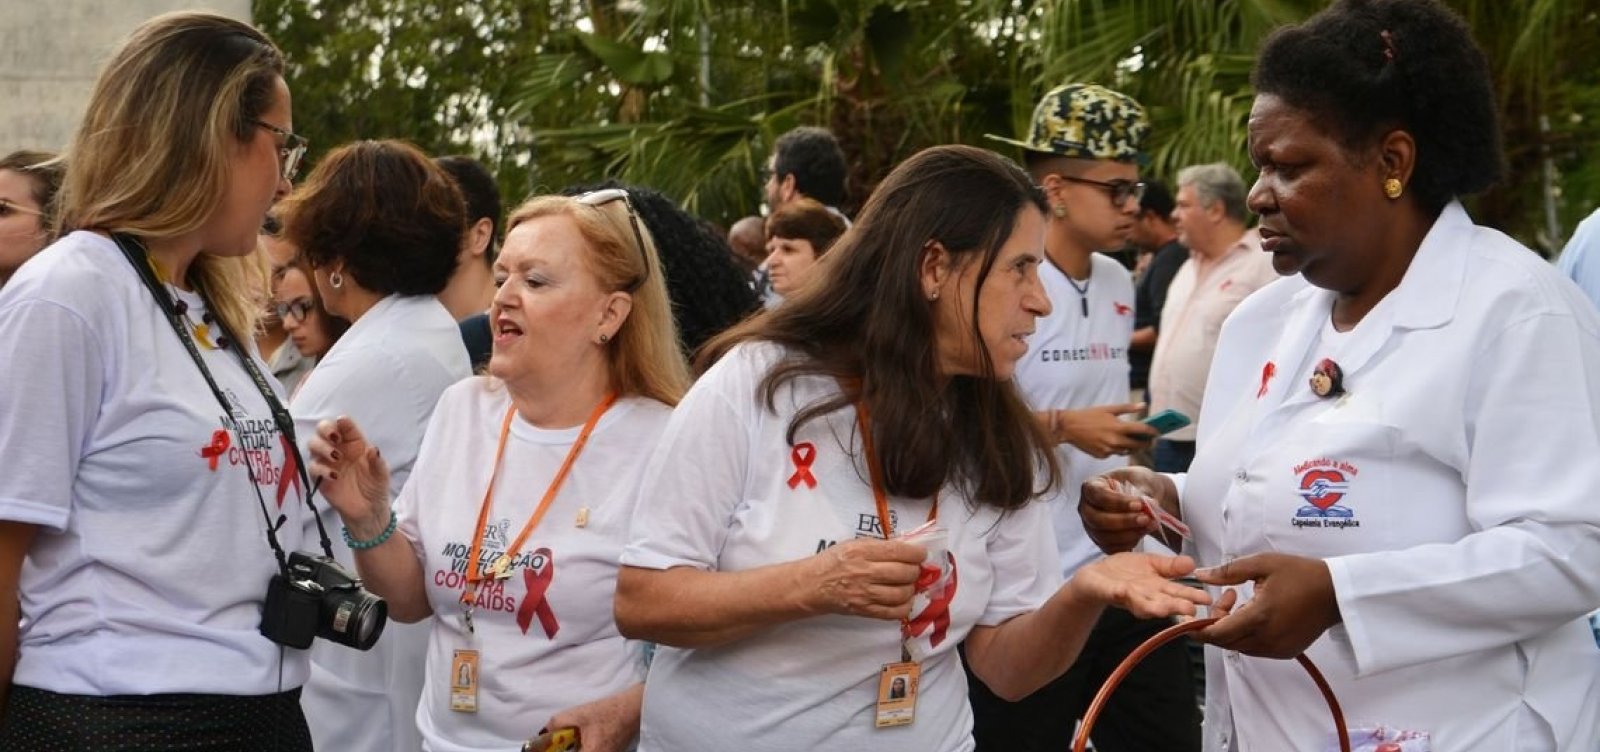 Caminhada da AIDS em SP chama atenção para prevenção da doença